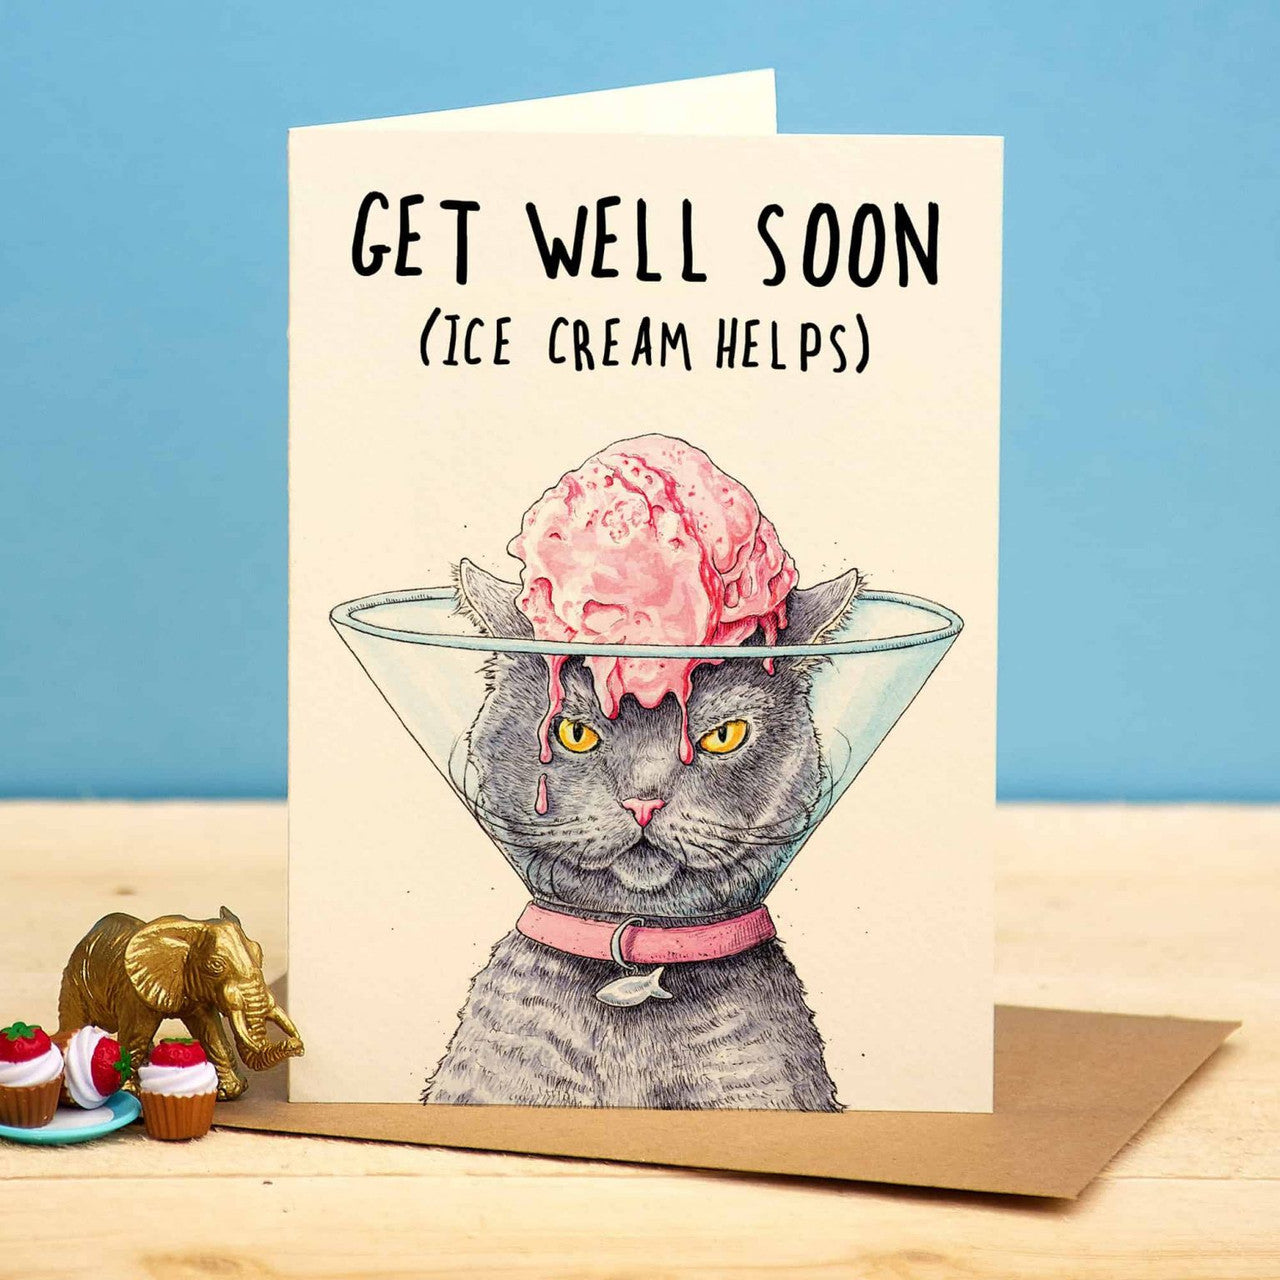 Get Well Soon - Ice Cream Helps Greetings Card by Bewilderbeest.